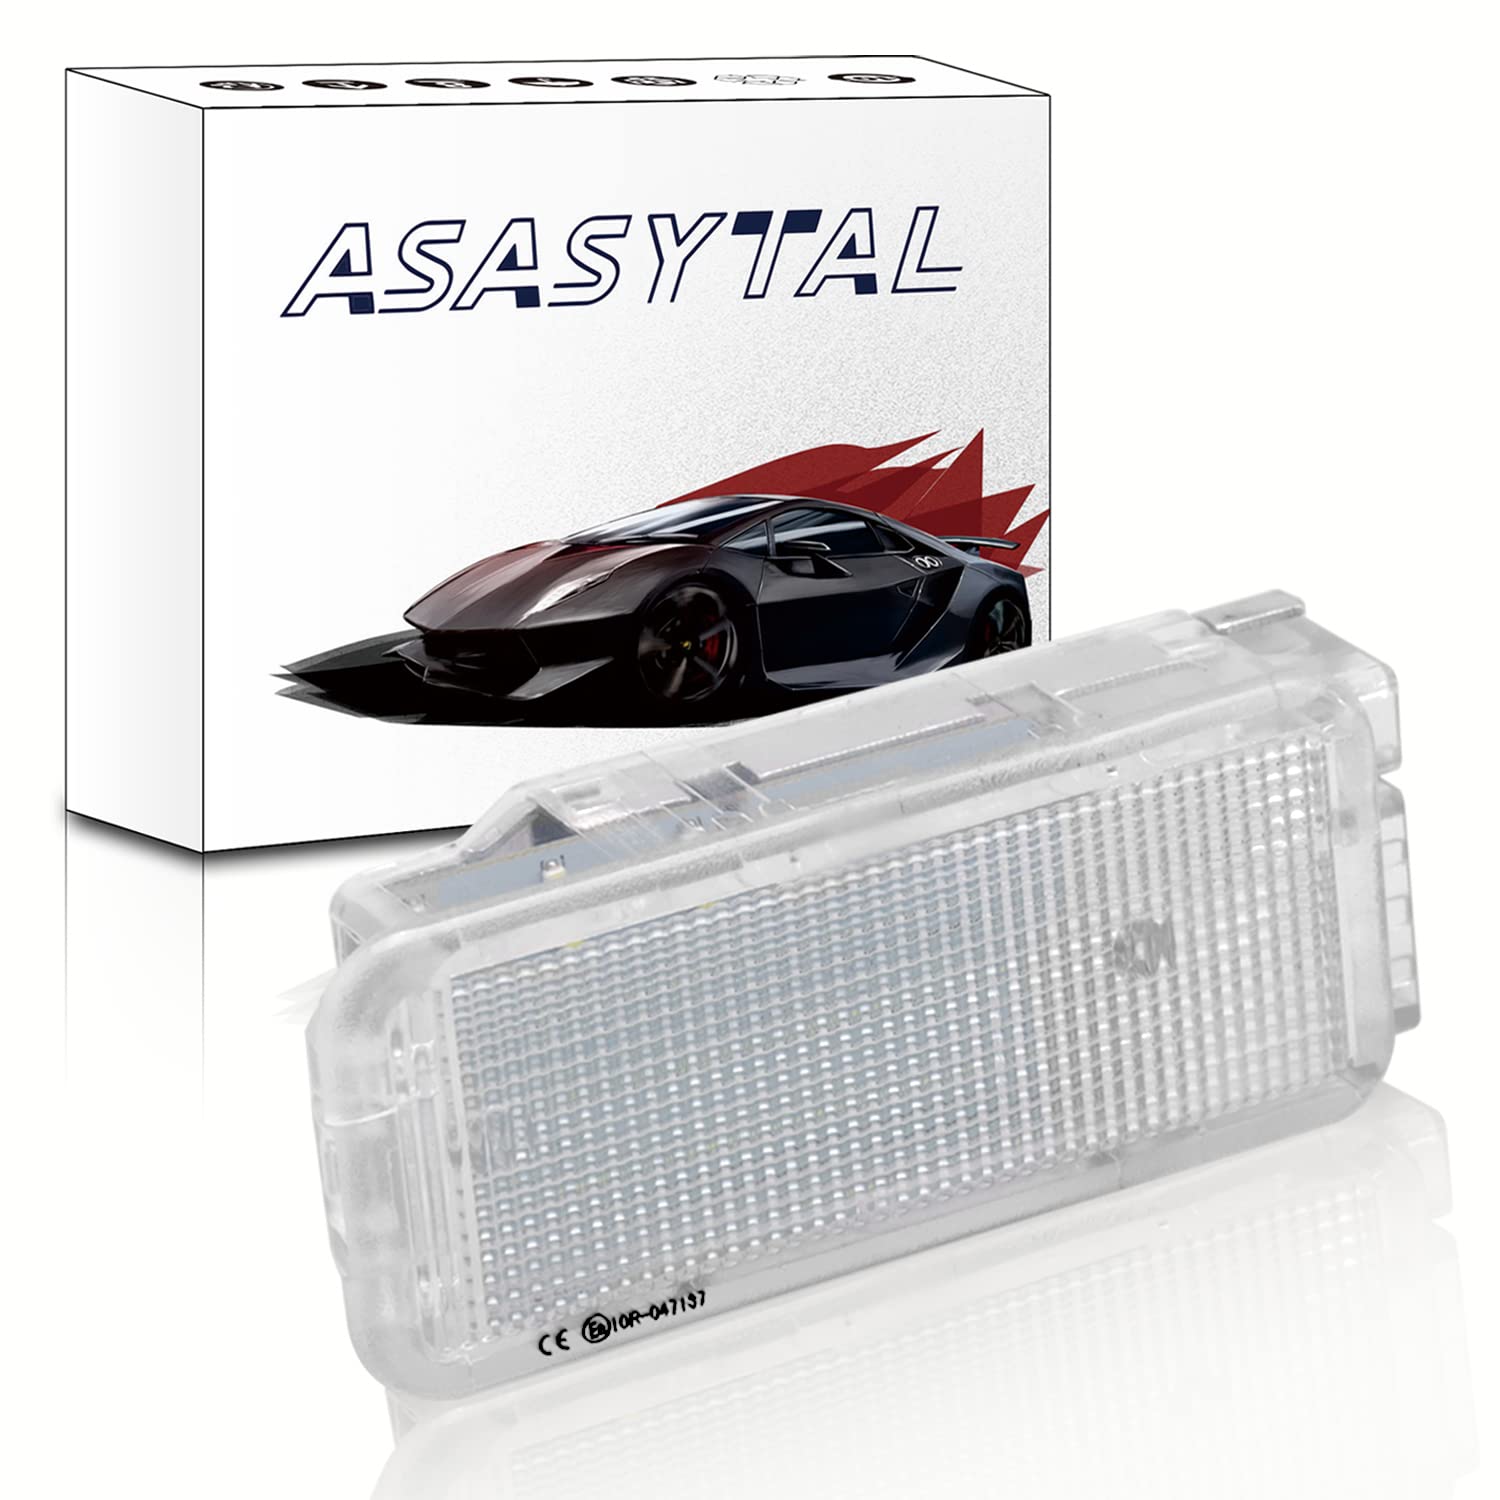 Asasytal LED-Kofferraumleuchte Fußraum unter der Tür Handschuhfachleuchte Kompatibel mit Peugeot 206 T1 206 T3E 207/307/308/3008/406/407/408/508/607/806/807/1007/3008/5008/RCZ Citroen C2/3/4/5,1 Stück von Asasytal